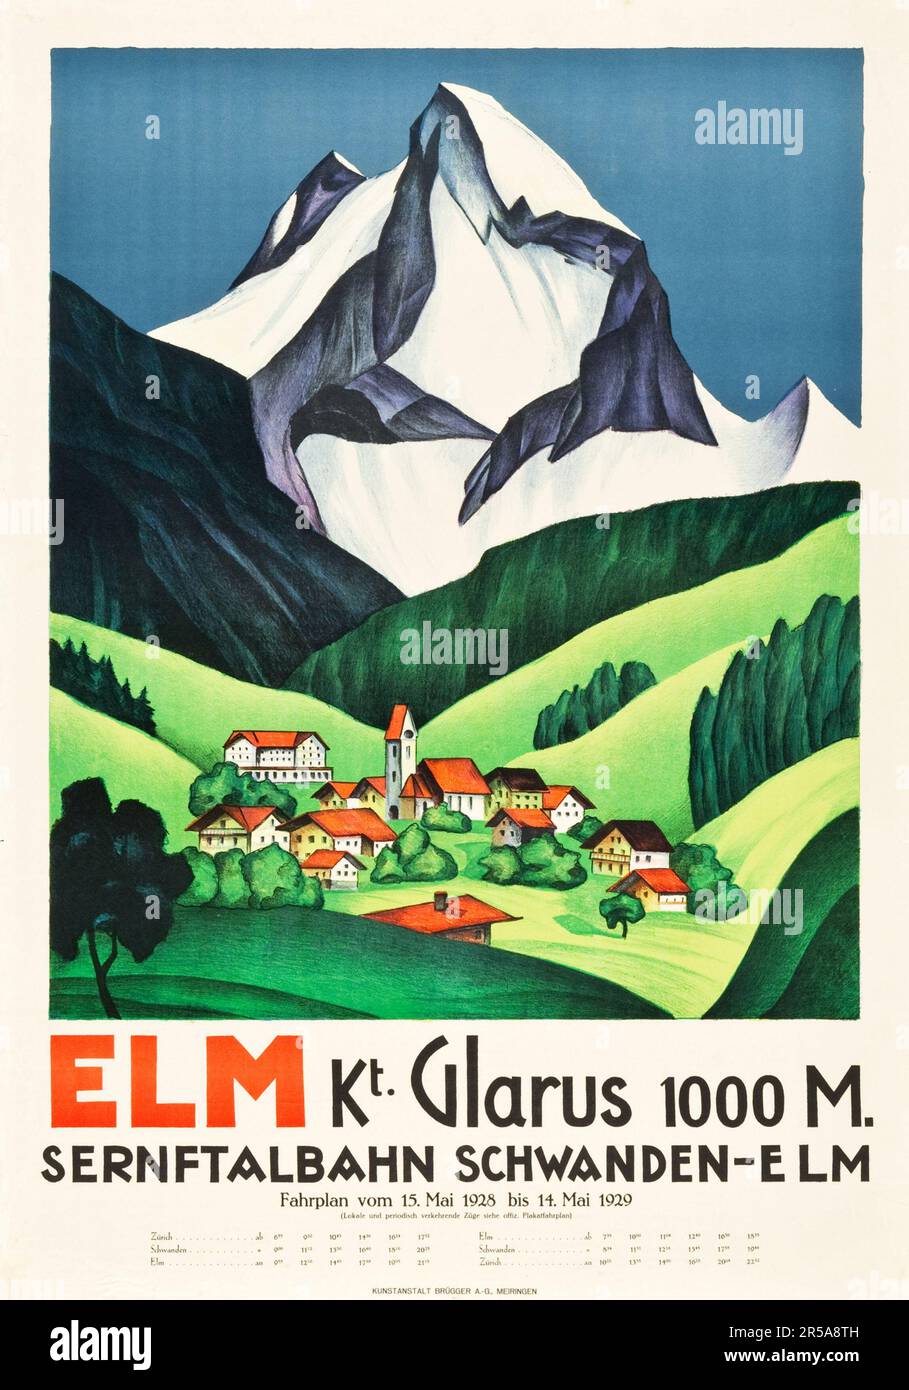 Elm, Kt Glarus 1000 M, Sernftalbahn Schwanden-Elm, Switzerland Travel Poster (1928) - Vintage calendar. Unknown artist. Stock Photo